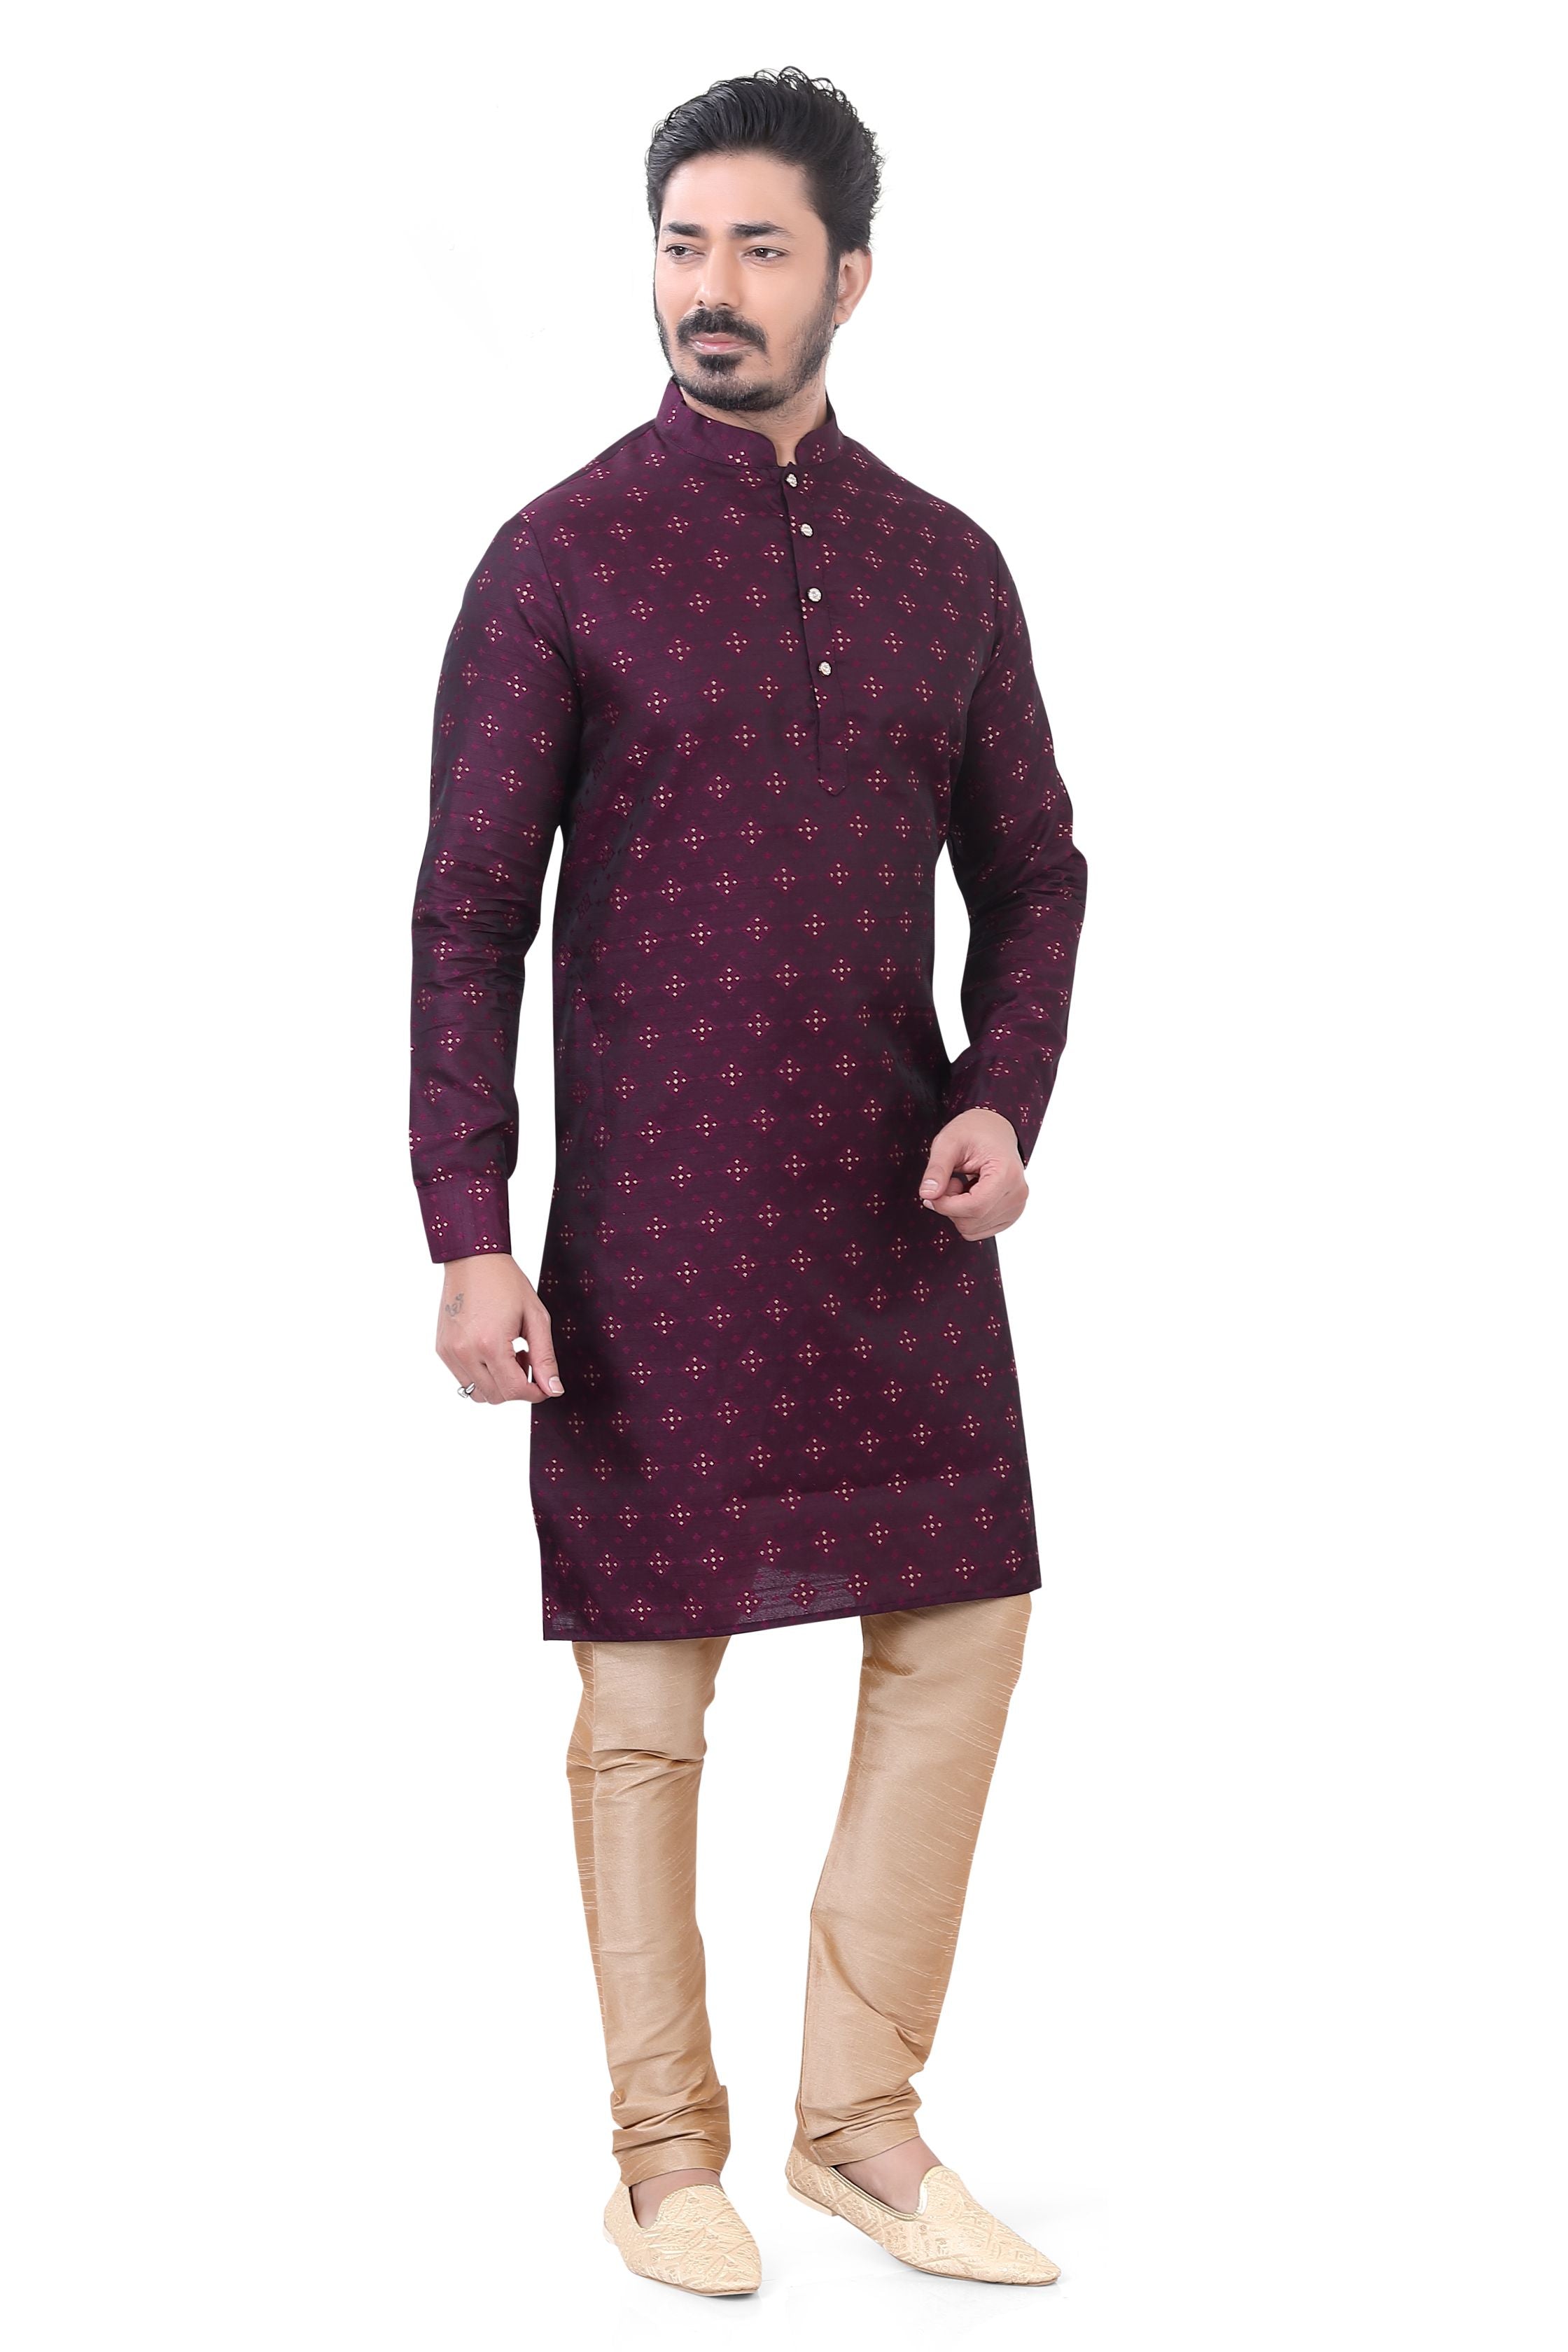 Banarasi Silk self toned Kurta Pajama in Wine color.